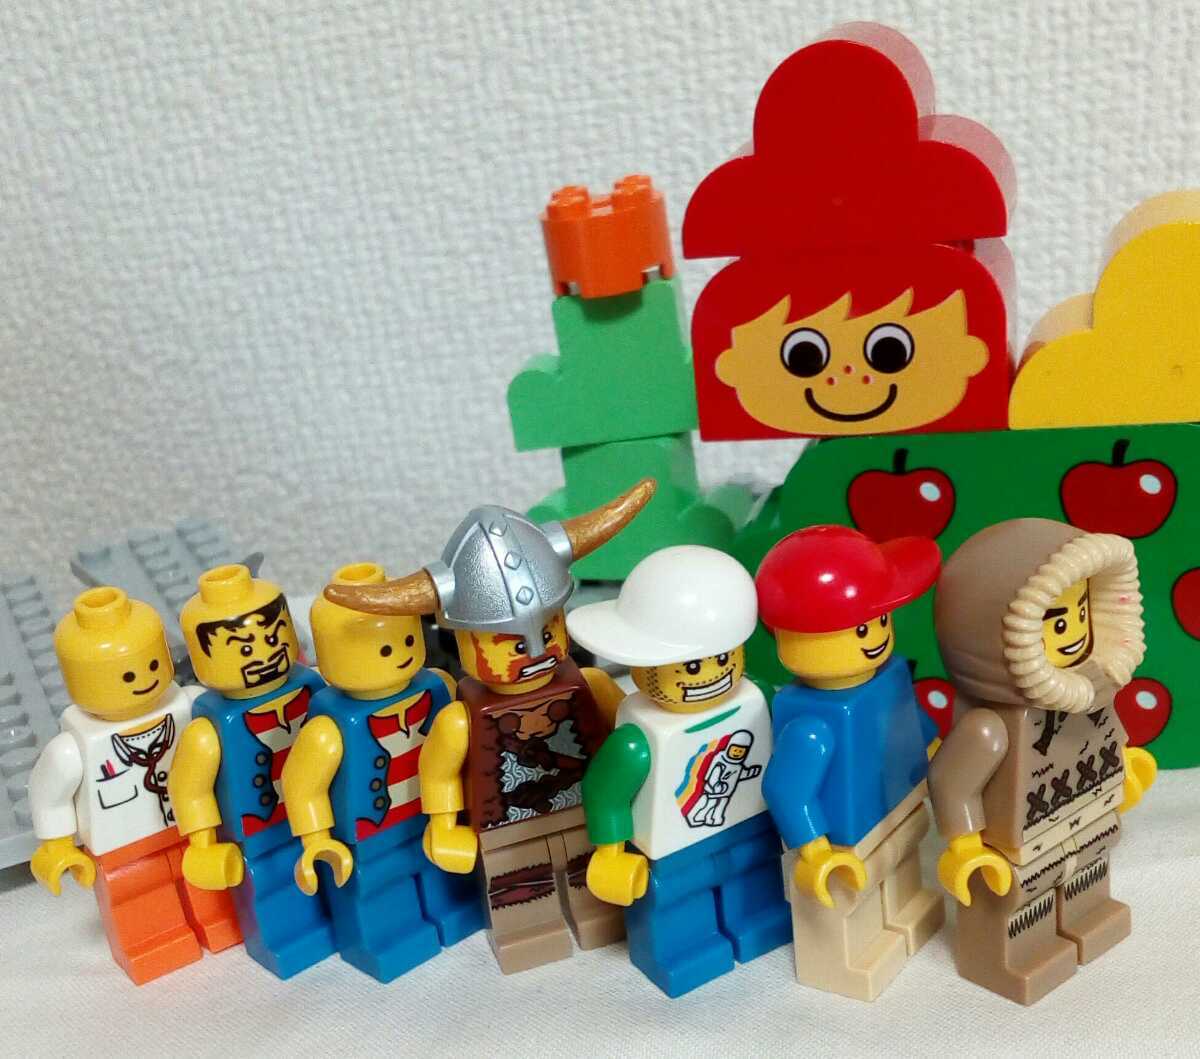 レゴ りんご アップル LEGO 顔 デュプロ ブロック 赤いバケツ 海賊 パーツ ベースプレート ミニフィグ リンゴ 女の子 おさげ 赤髪 医者 n3b_画像2